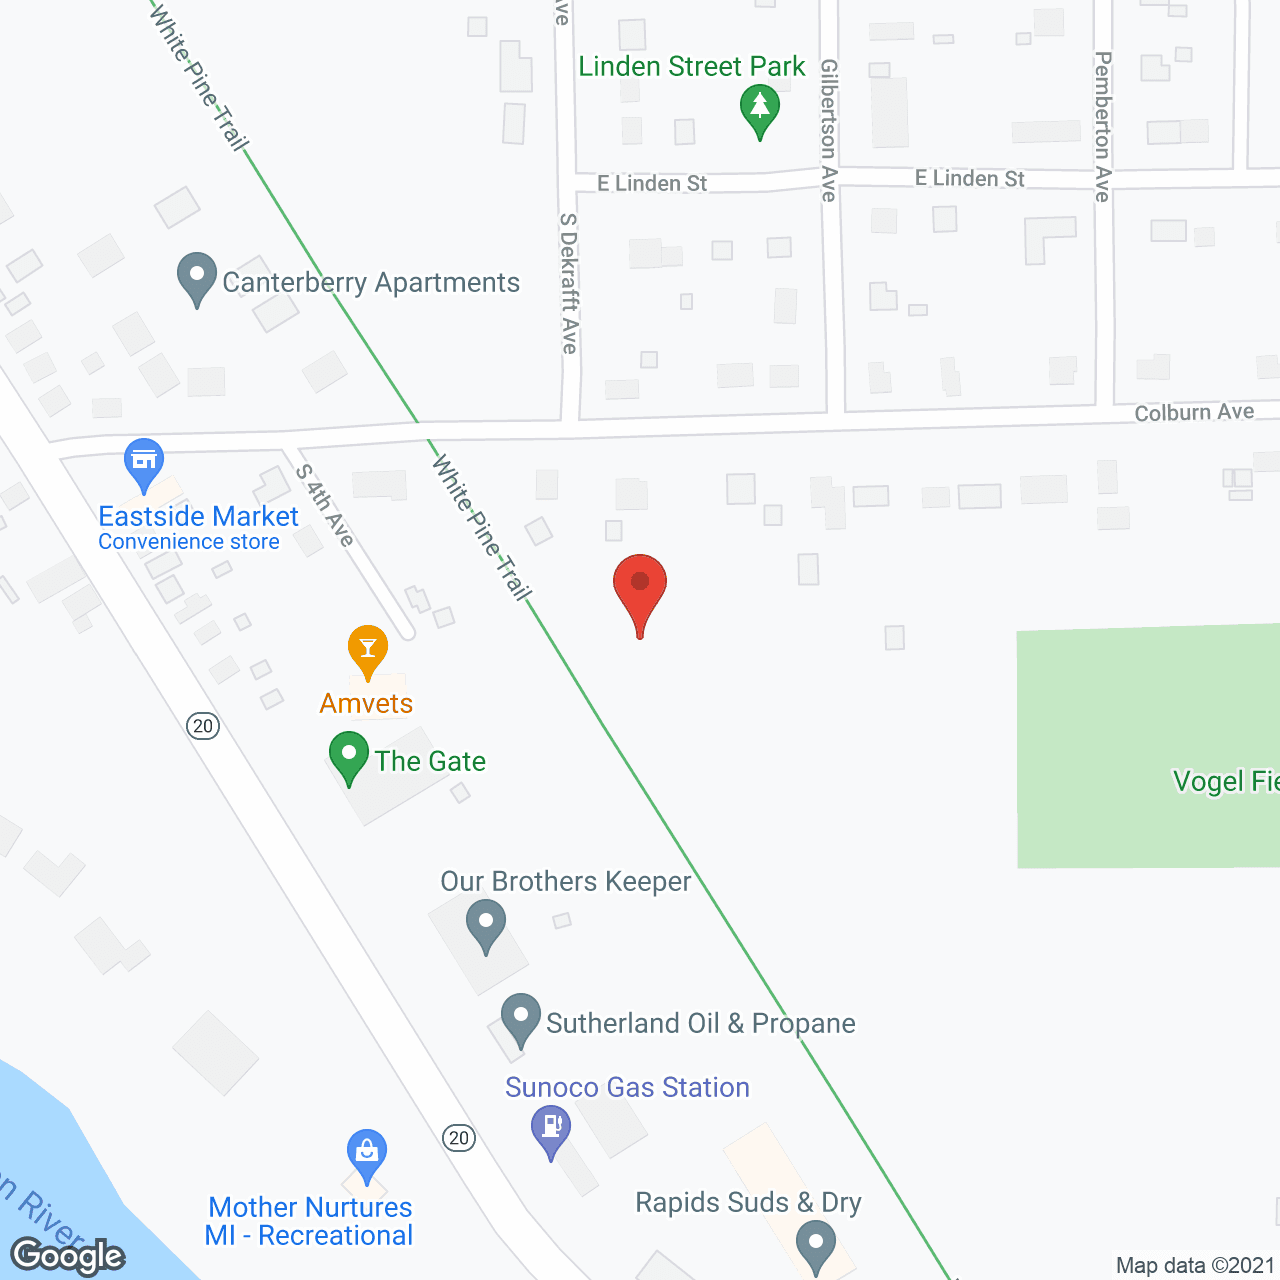 Big Rapids Fields in google map